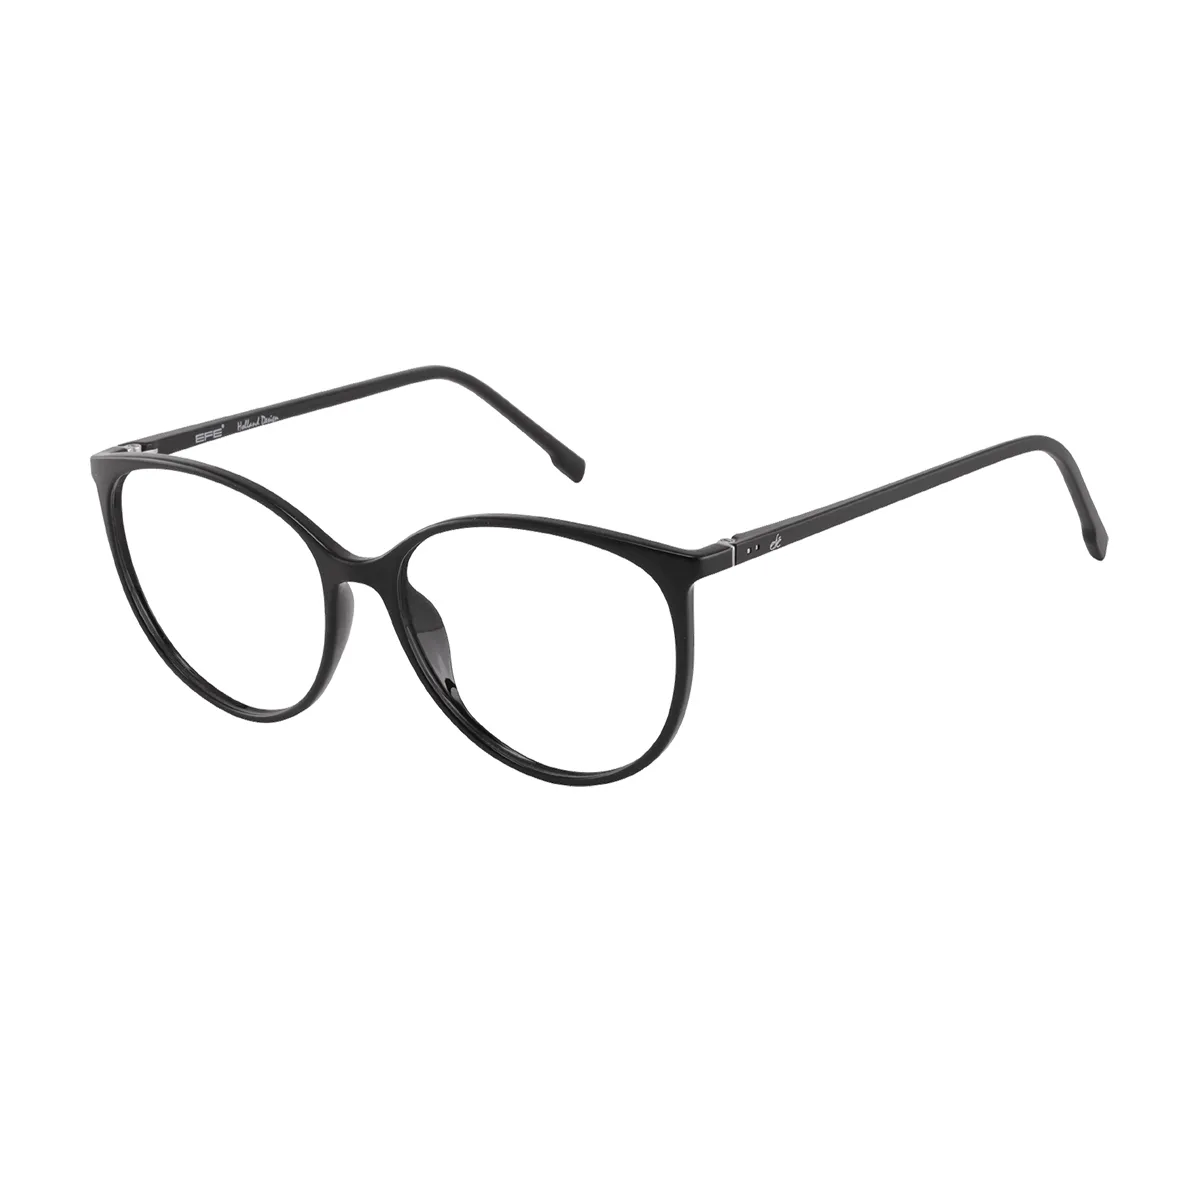 Classic Round Black Eyeglasses for Women & Men